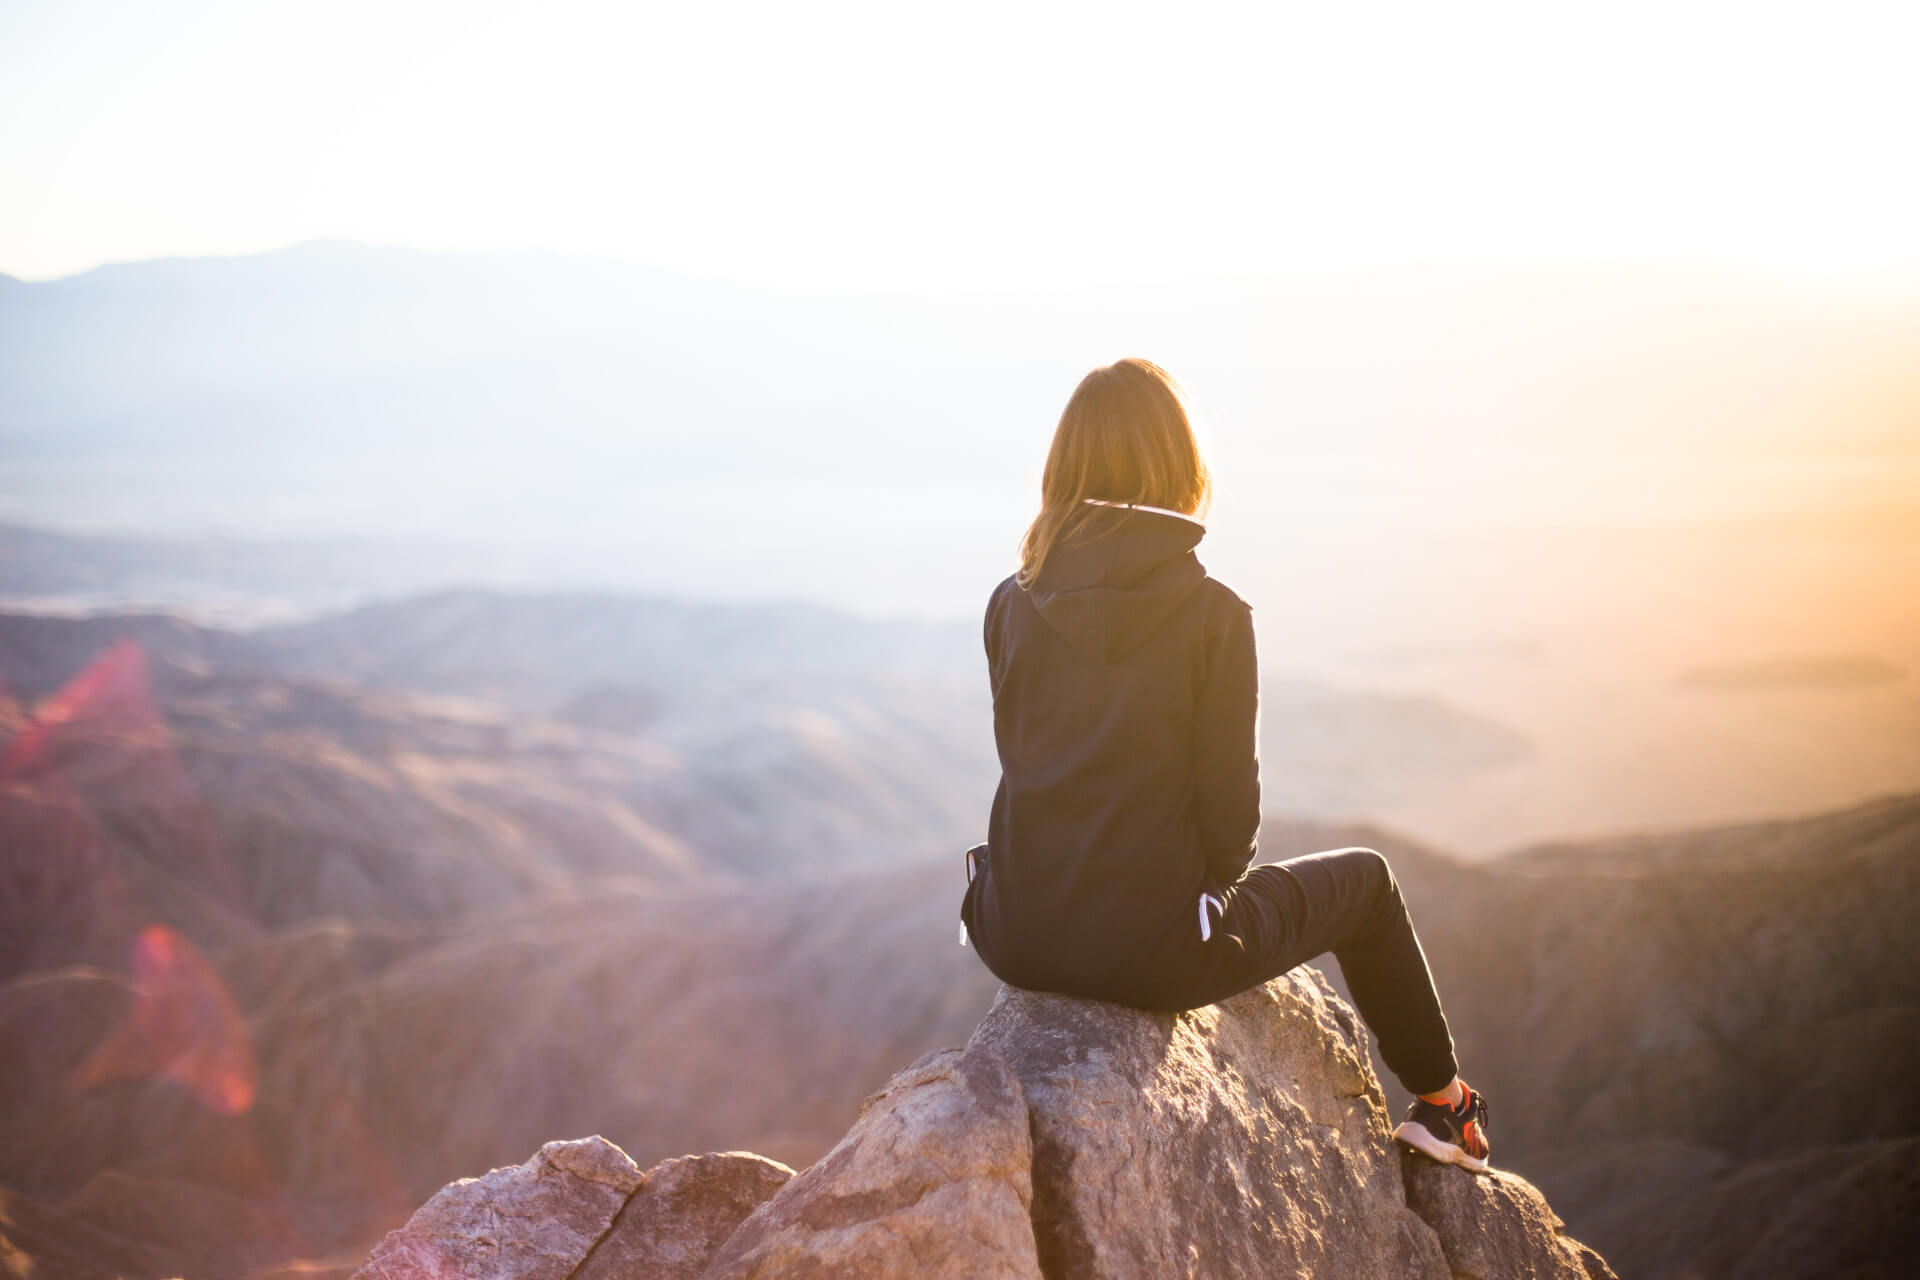 Une femme est assise au sommet d'une montagne après une longue escalade.